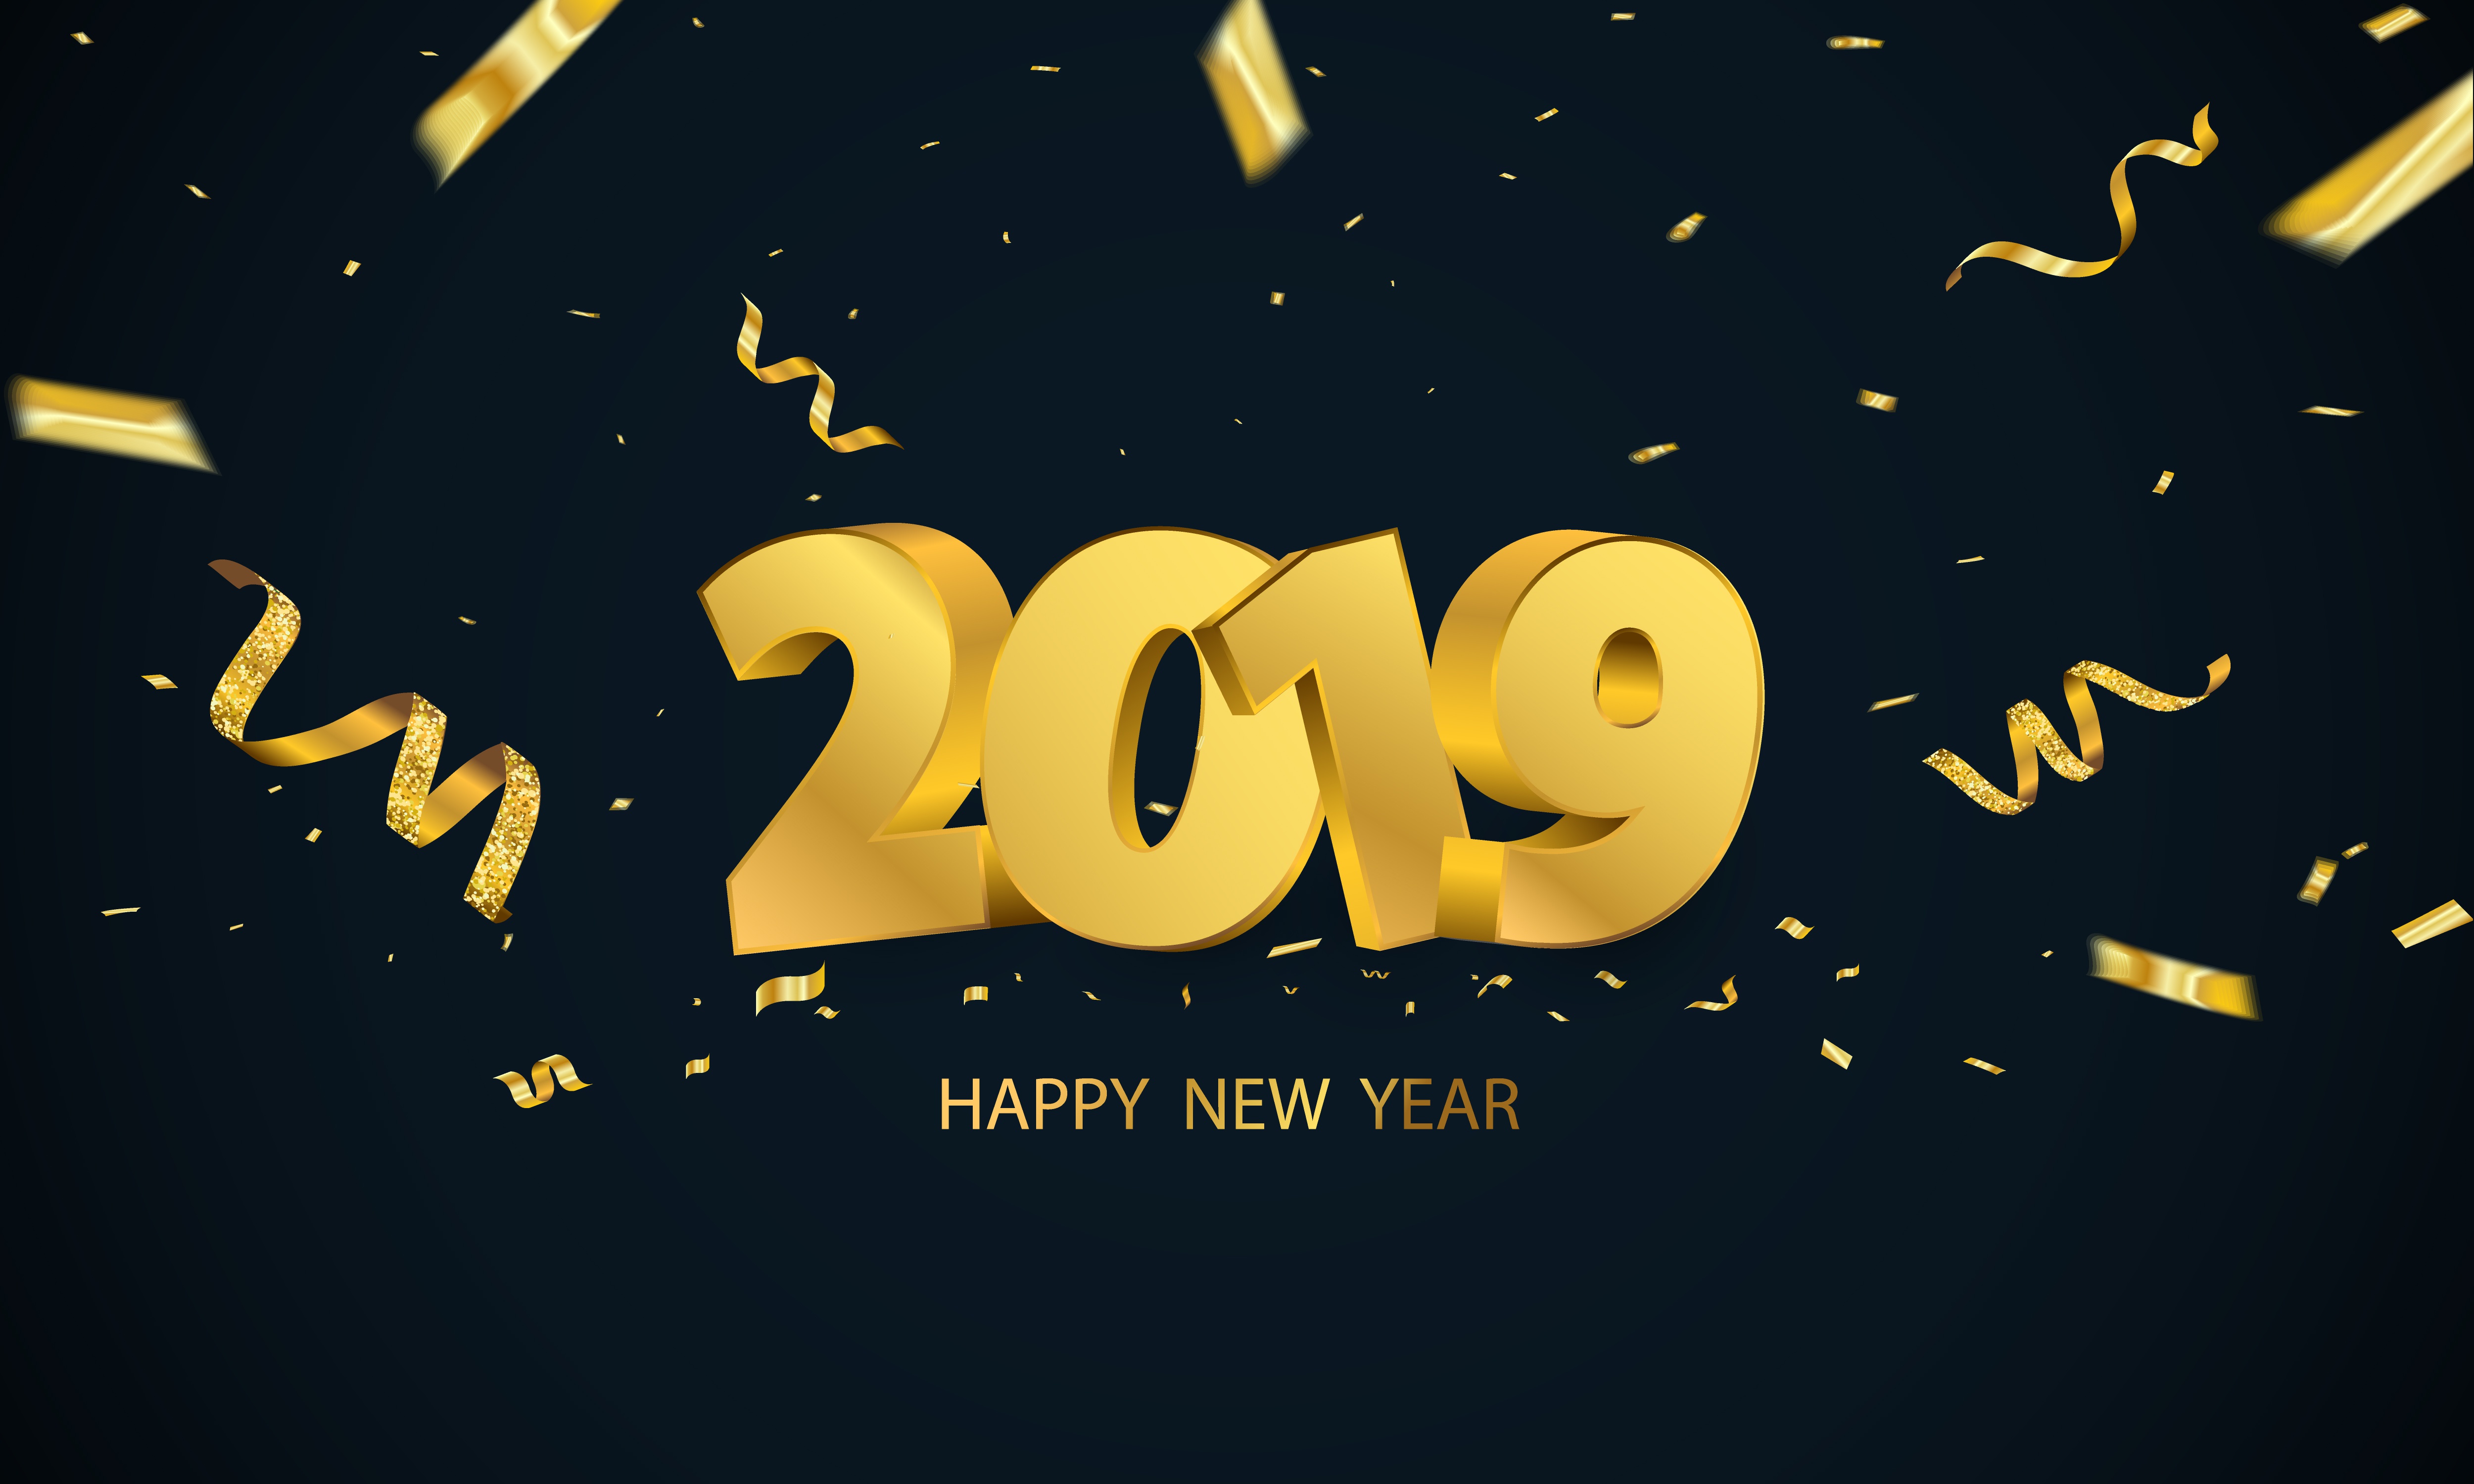 Скачать обои бесплатно Новый Год, Праздничные, С Новым Годом, Новый Год 2019 картинка на рабочий стол ПК